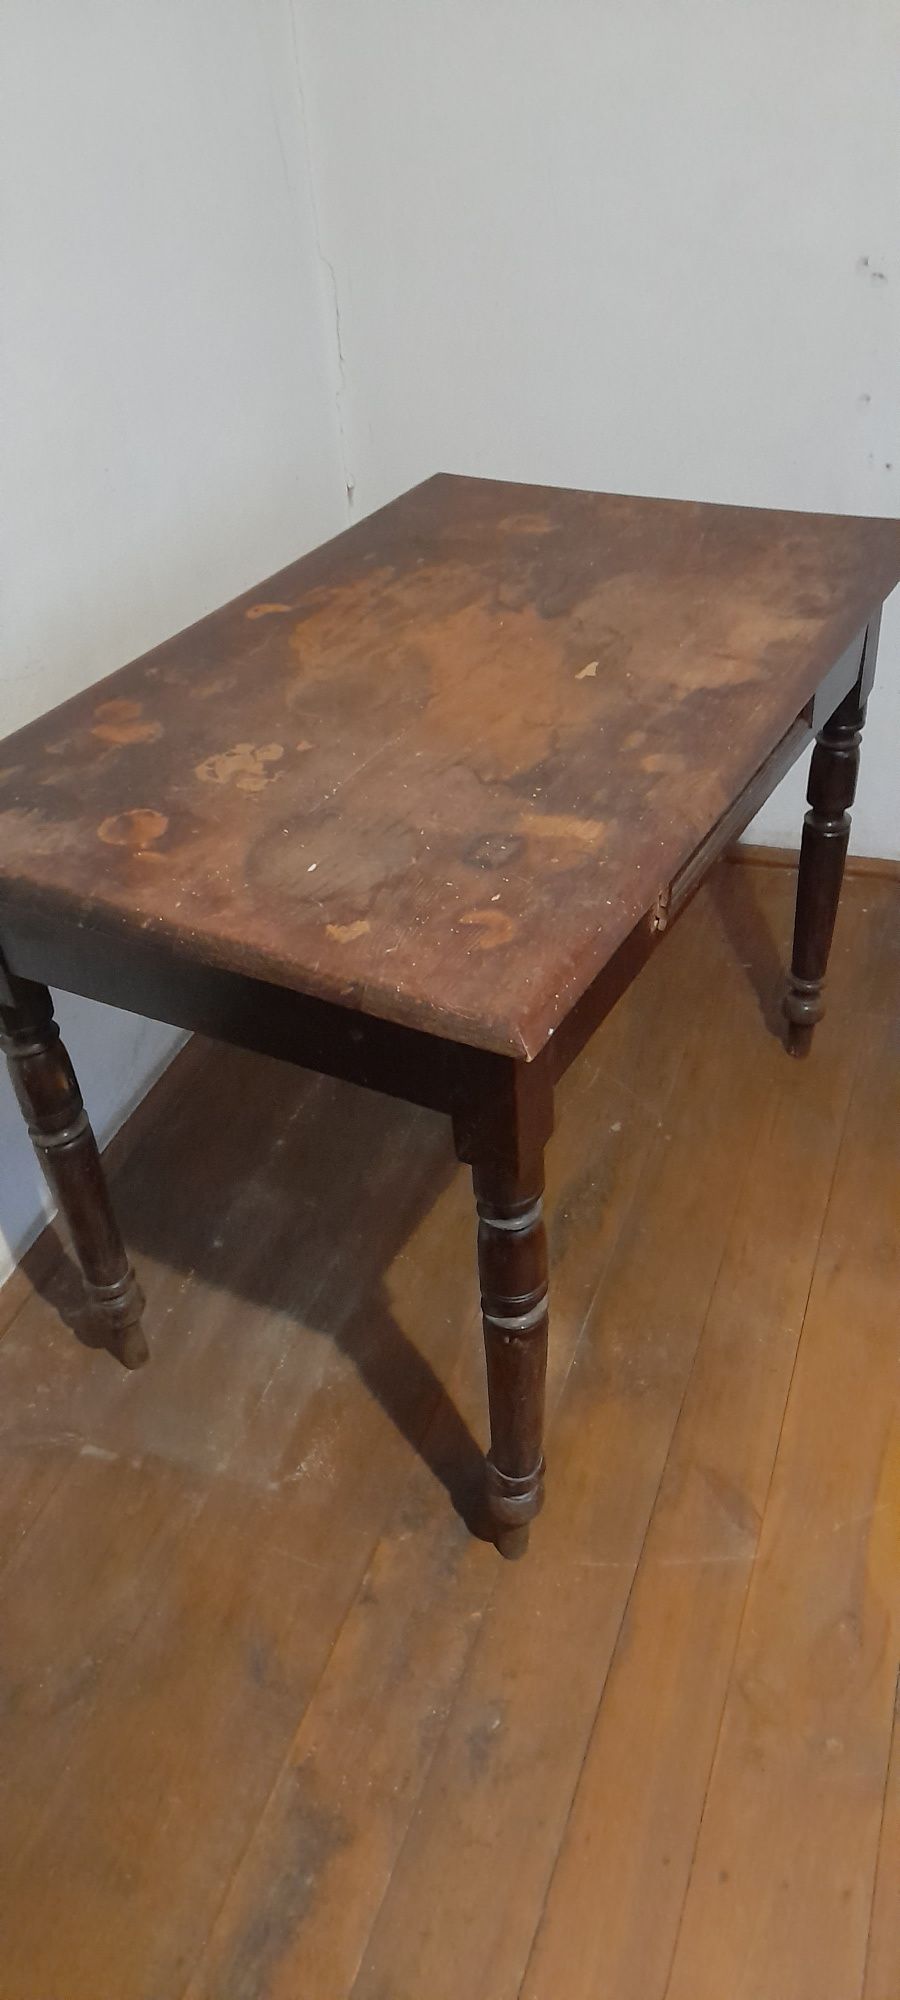 Stół stary drewniany brązowy z szufladą